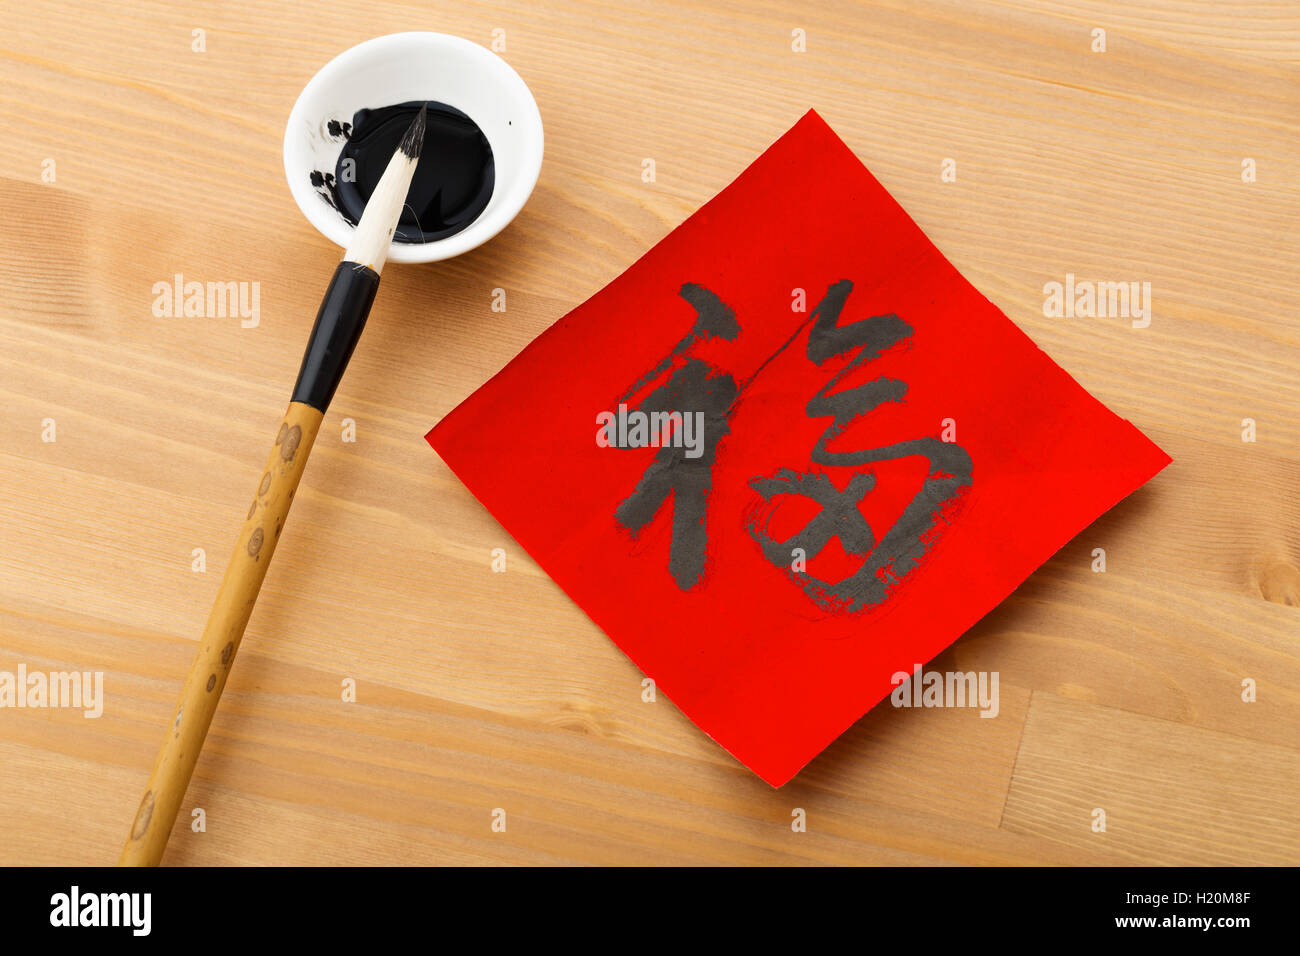 Chinesisch schreiben Kalligraphie für Chinese New Year, Wort Fu